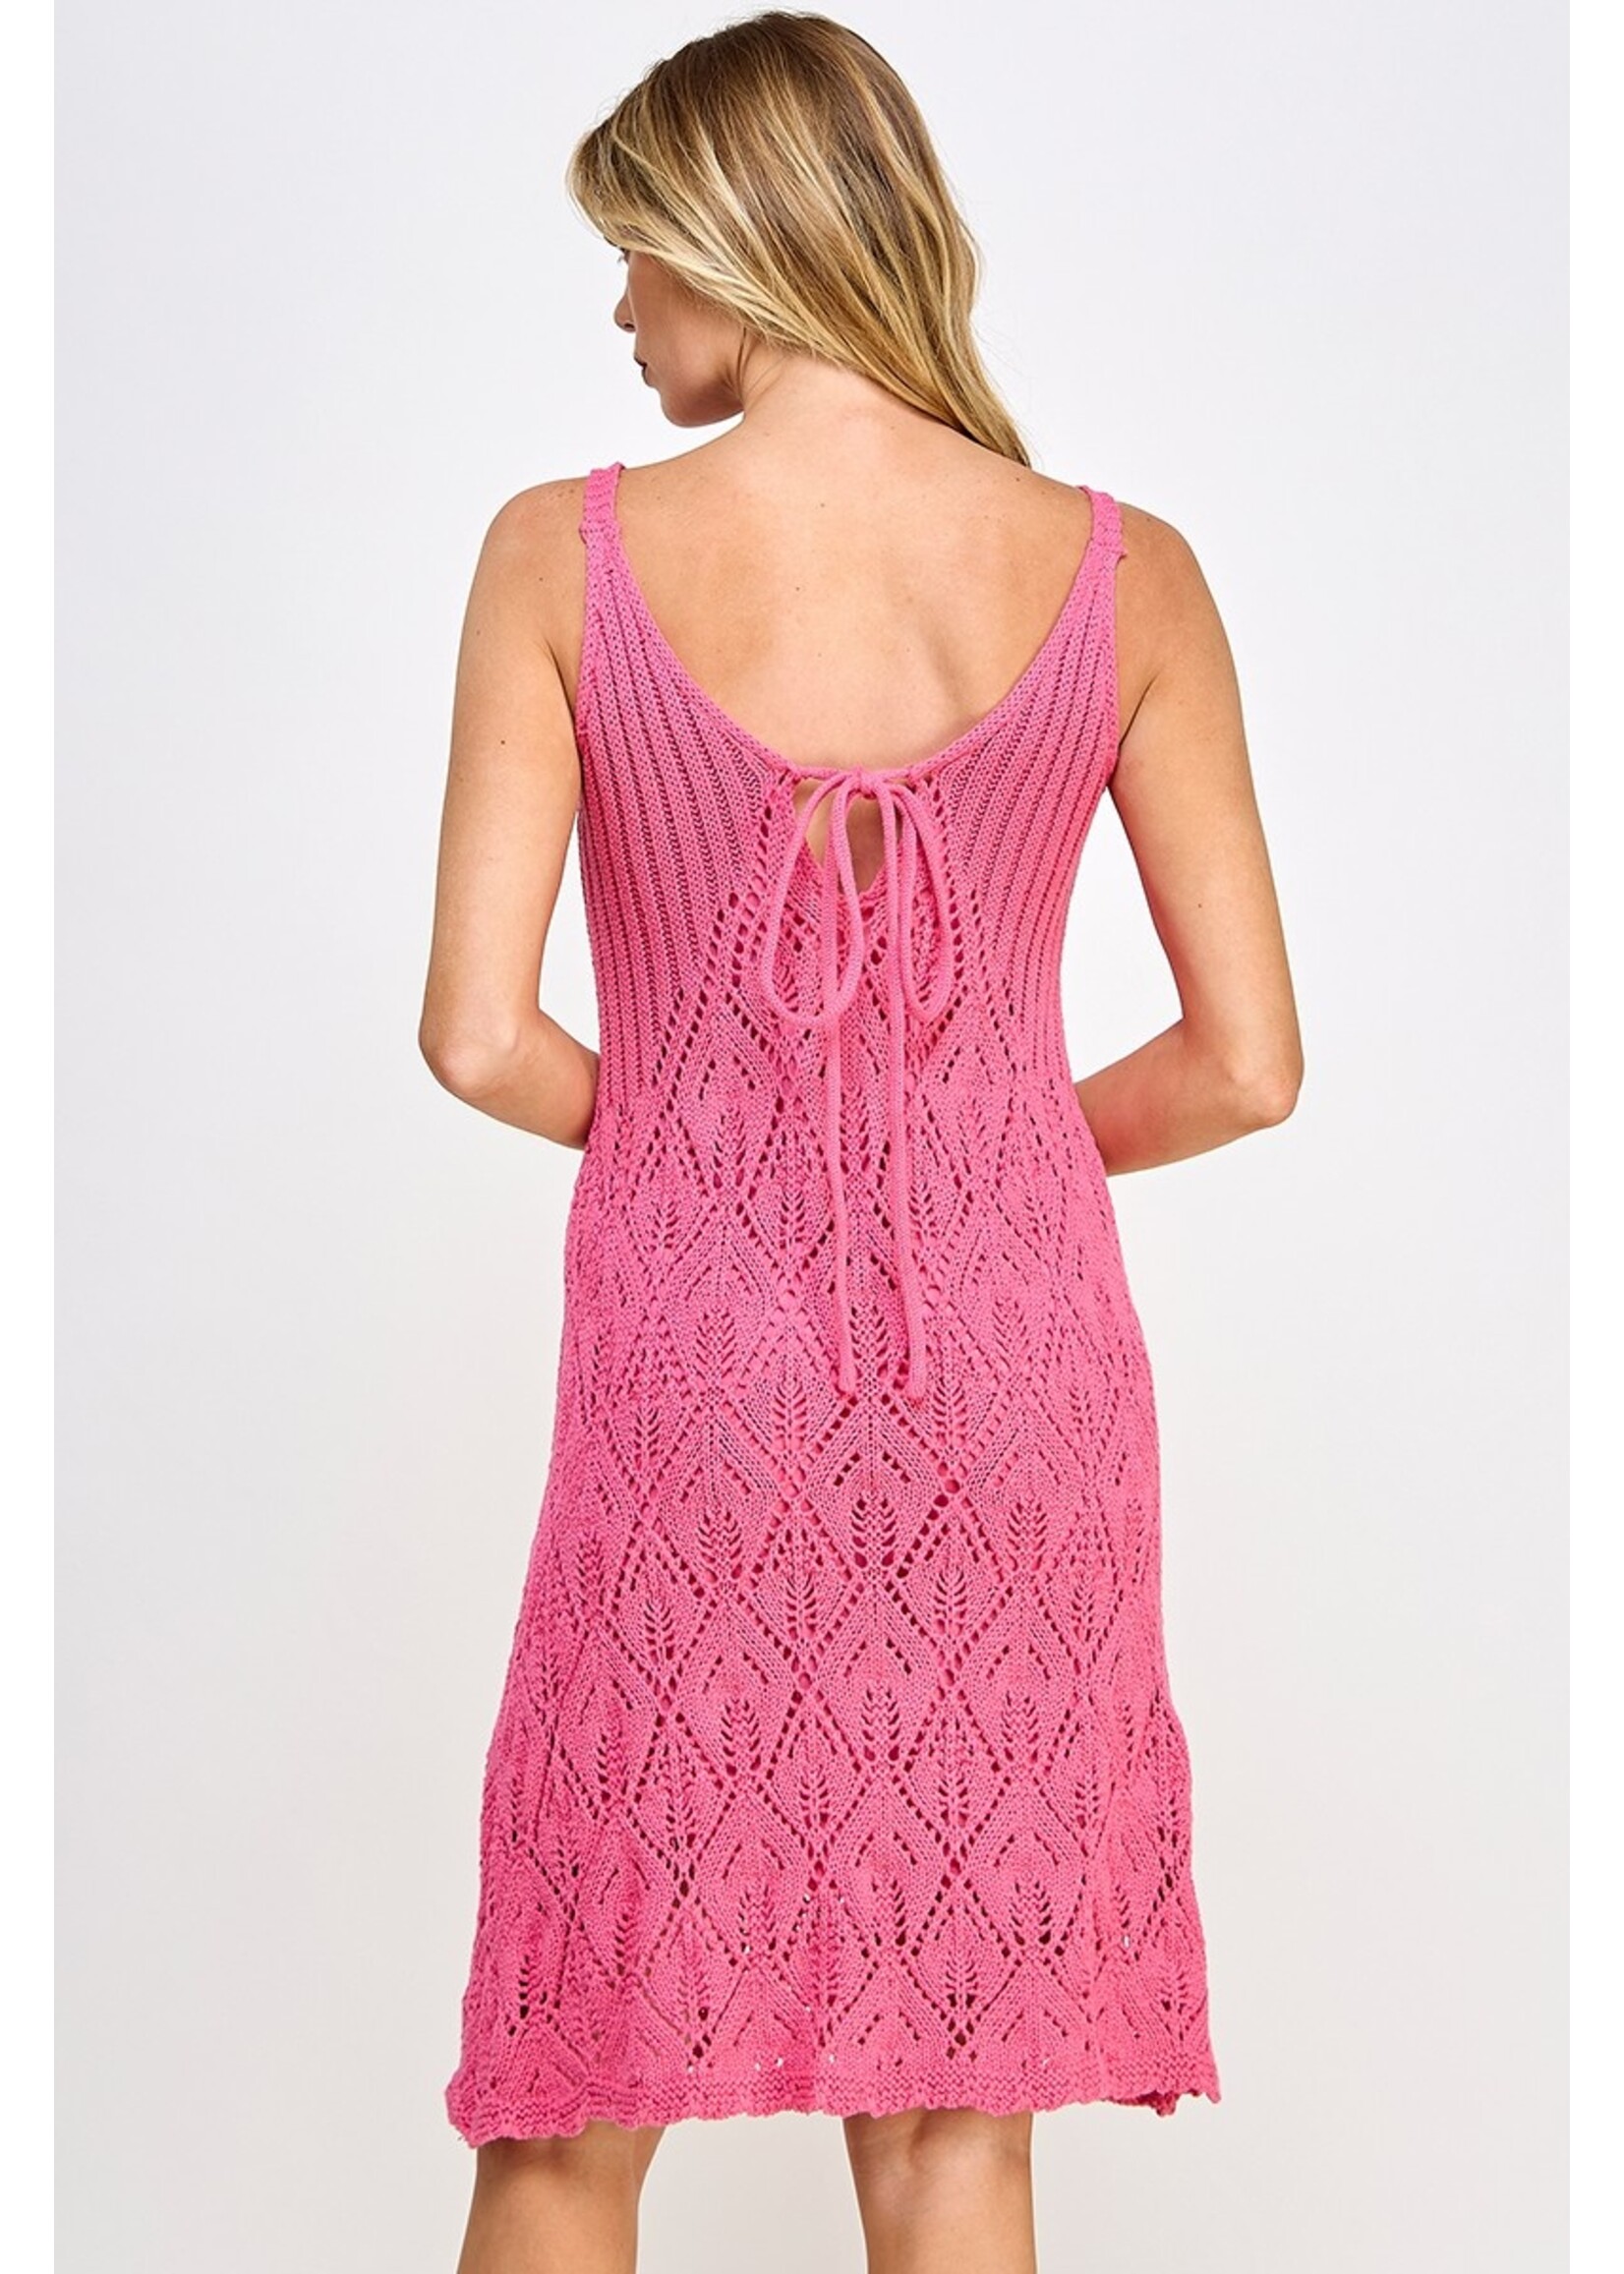 Ellison Crochet Mini Dress - KD-1562-6